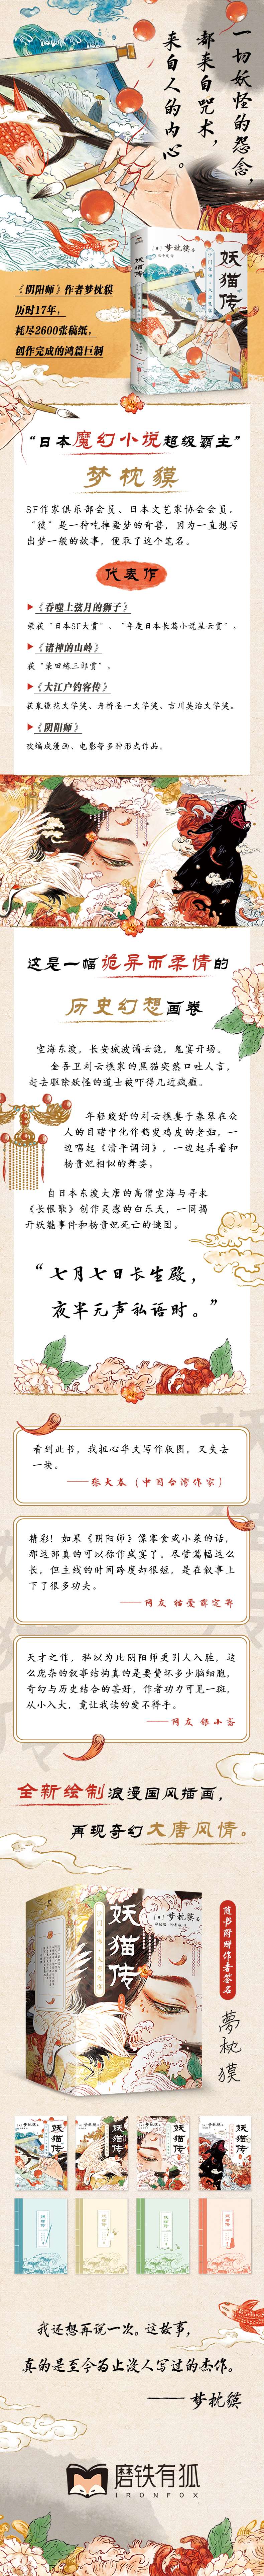 妖猫传 沙门空海·大唐鬼宴 4 外国科幻,侦探小说